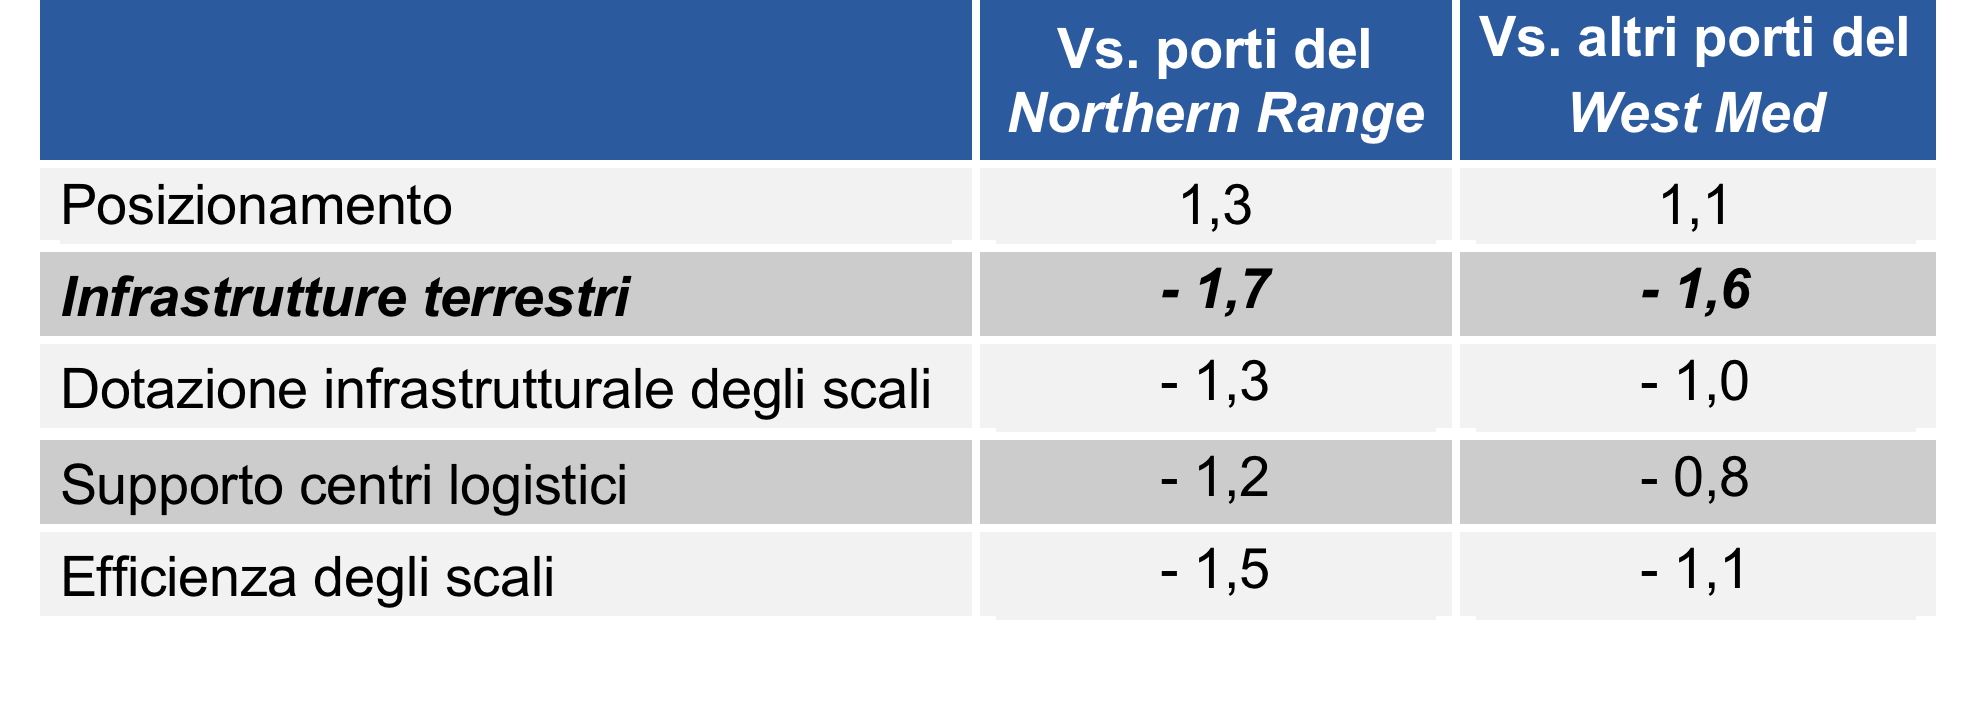 Il contesto nazionale: limiti e opportunità I porti italiani, specie quelli del centro-sud, soffrono ancora di uno svantaggio competitivo elevato soprattutto per quanto riguarda i collegamenti con le